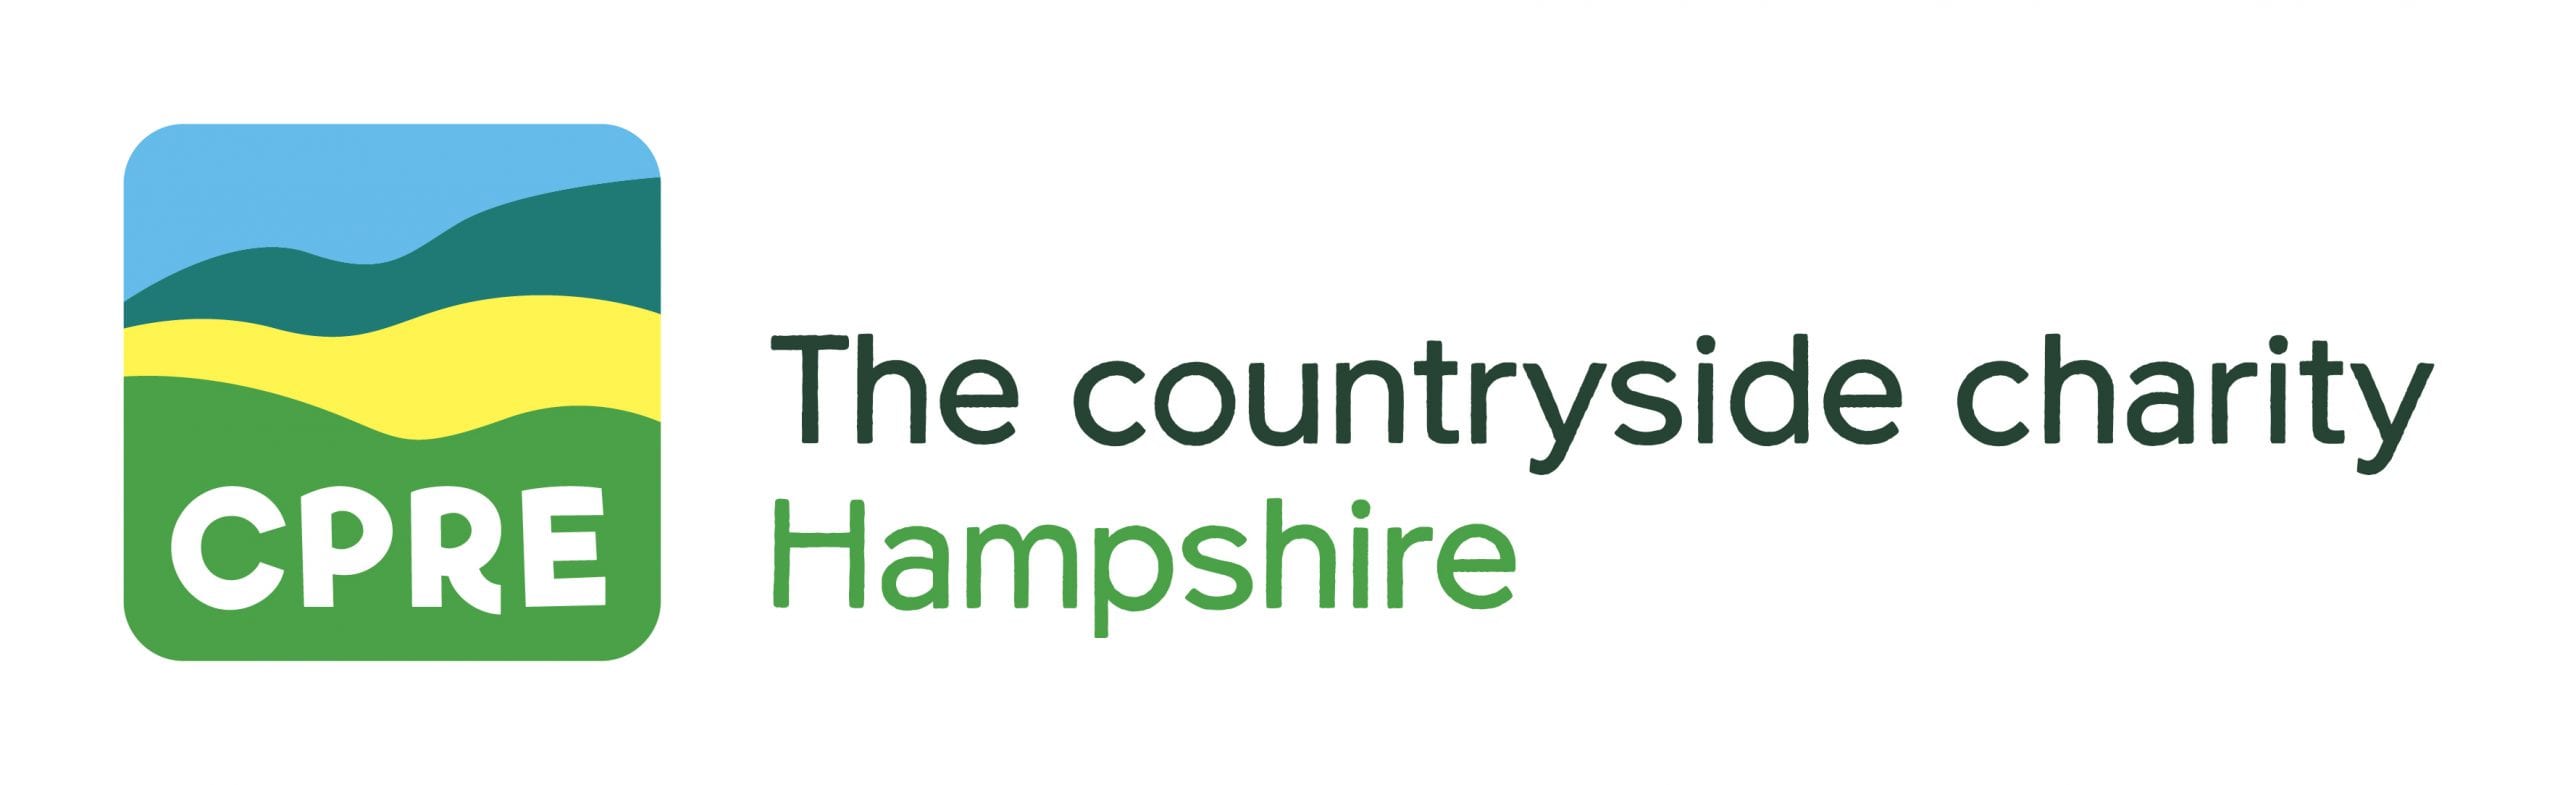 CPRE Hampshire logo